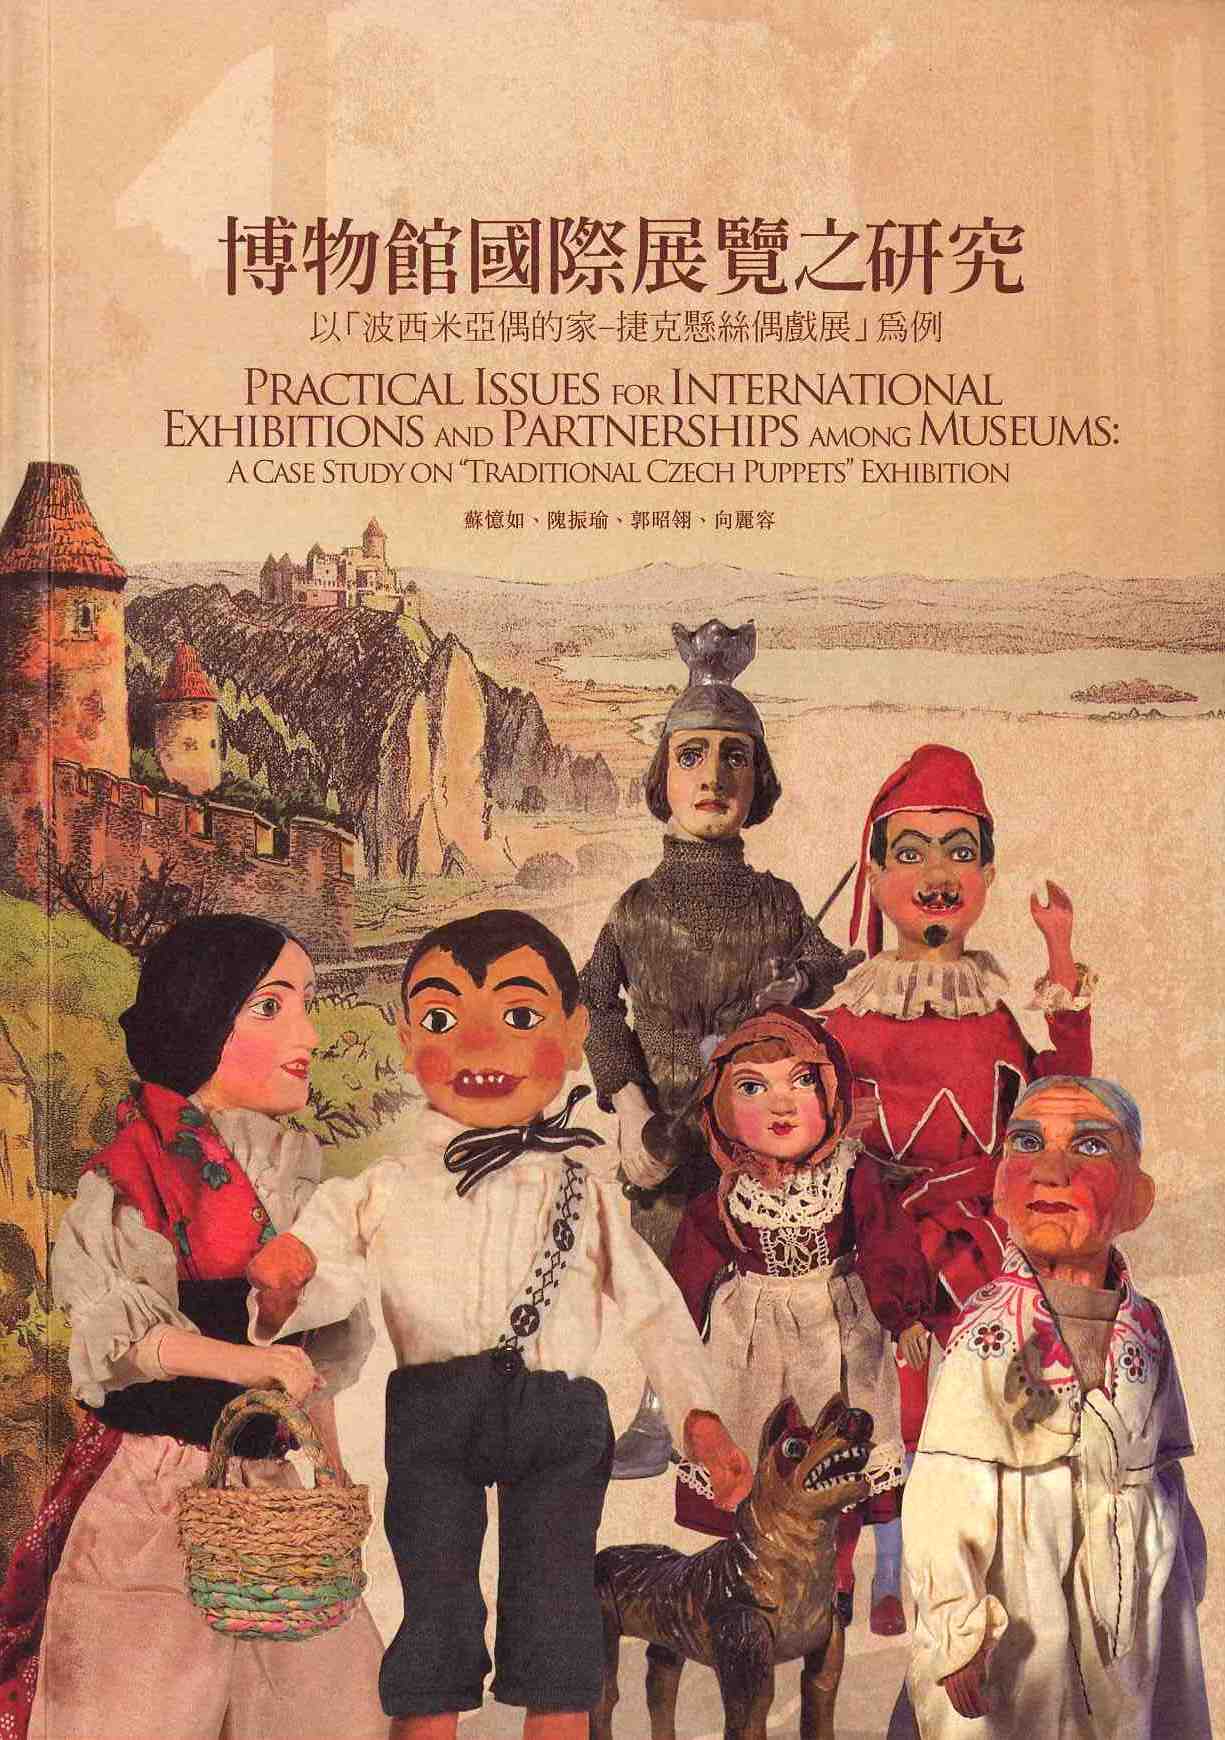 博物館國際展覽之研究-以「波西米亞偶的家-捷克懸絲偶戲展」為例